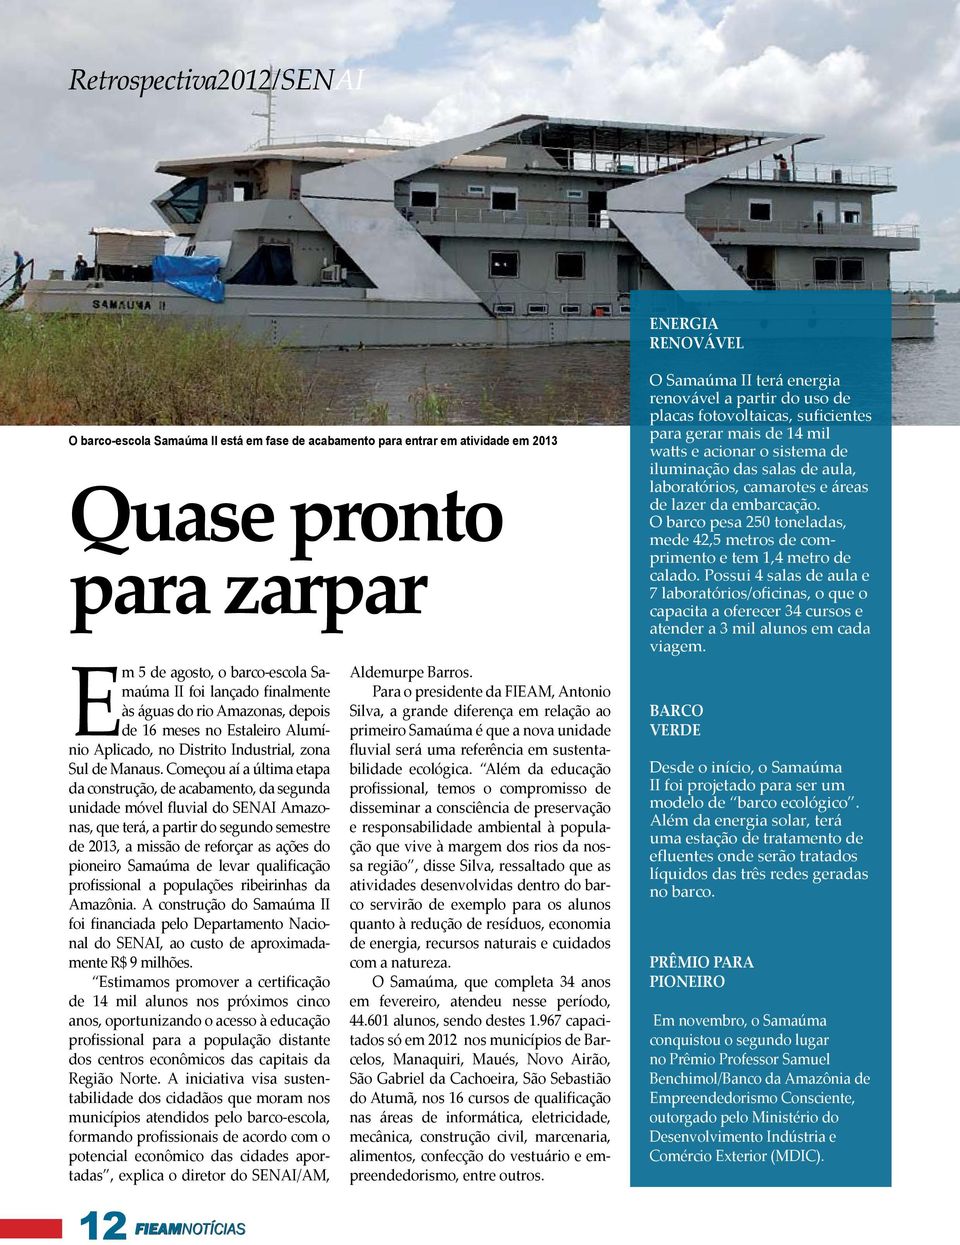 Começou aí a última etapa da construção, de acabamento, da segunda unidade móvel fluvial do SENAI Amazonas, que terá, a partir do segundo semestre de 2013, a missão de reforçar as ações do pioneiro